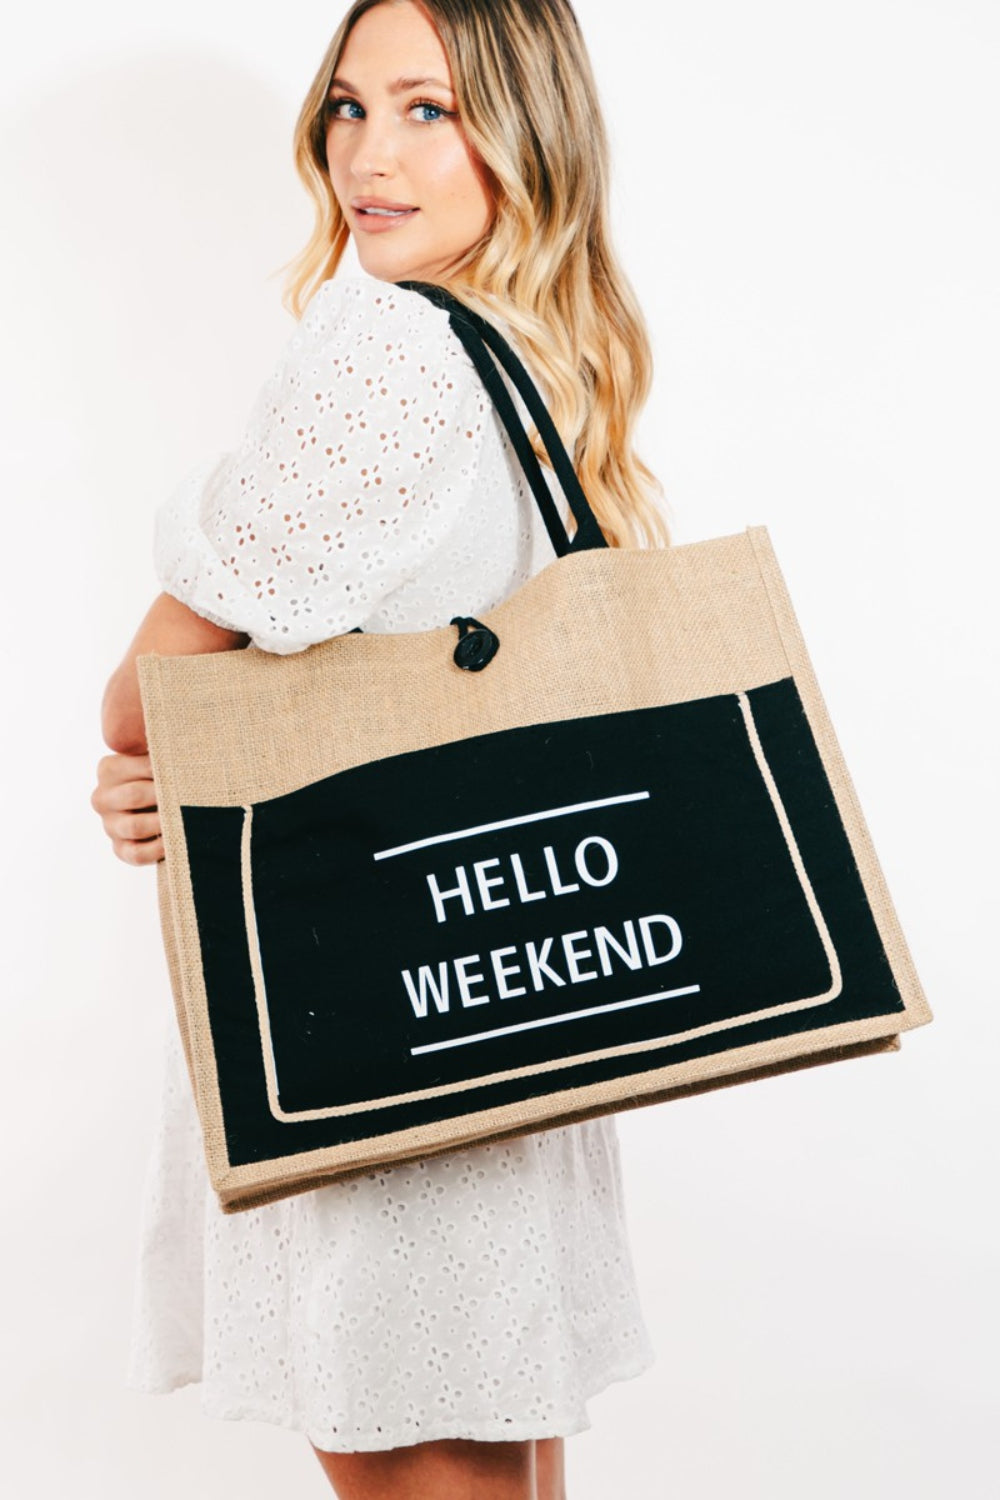 TEEK - Hello Weekend Burlap Tote Bag BAG TEEK Trend   